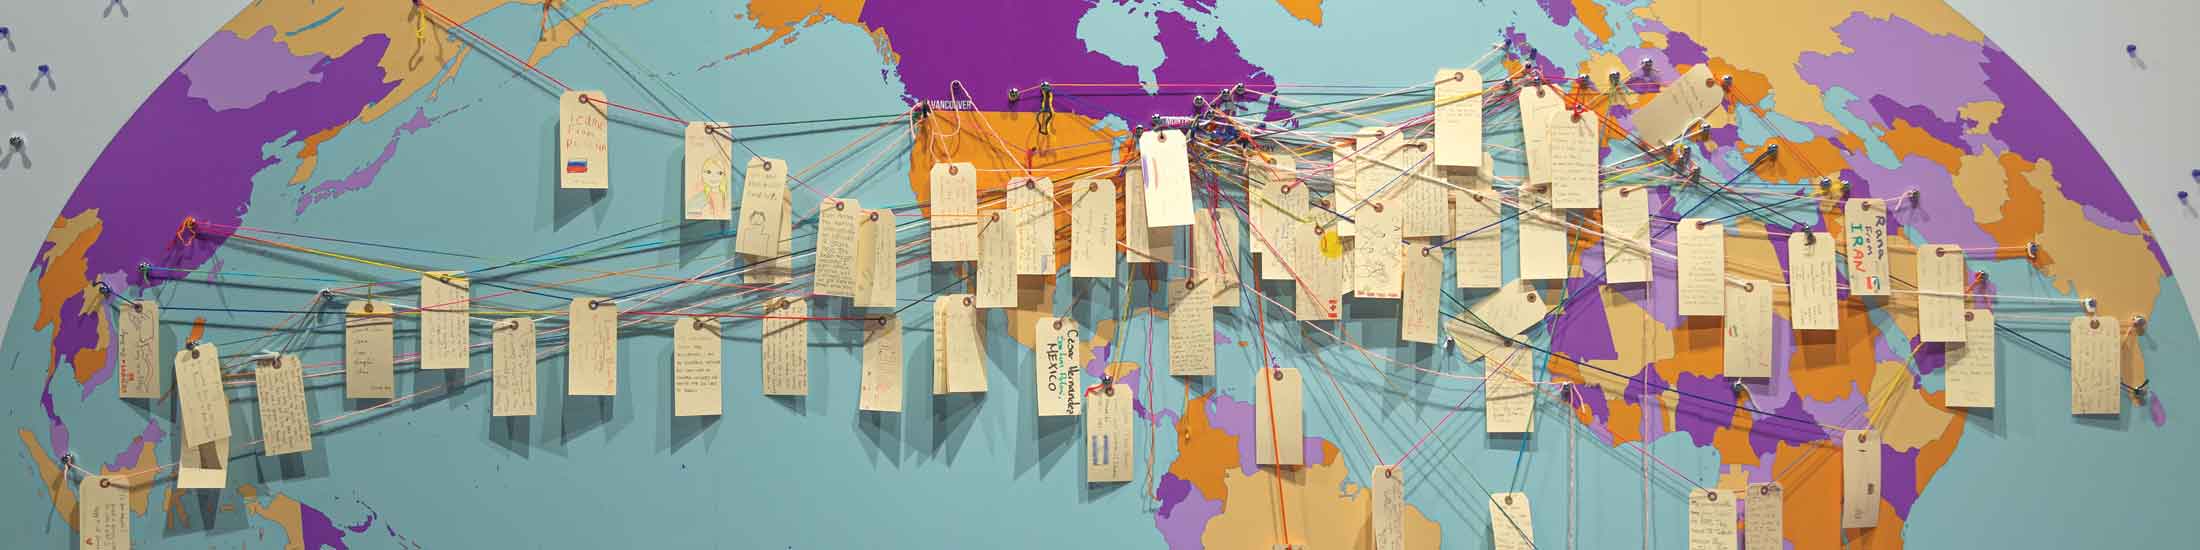 Des étiquettes de bagage avec des notes de visiteurs sont attachées avec une ficelle sur une grande carte du monde.